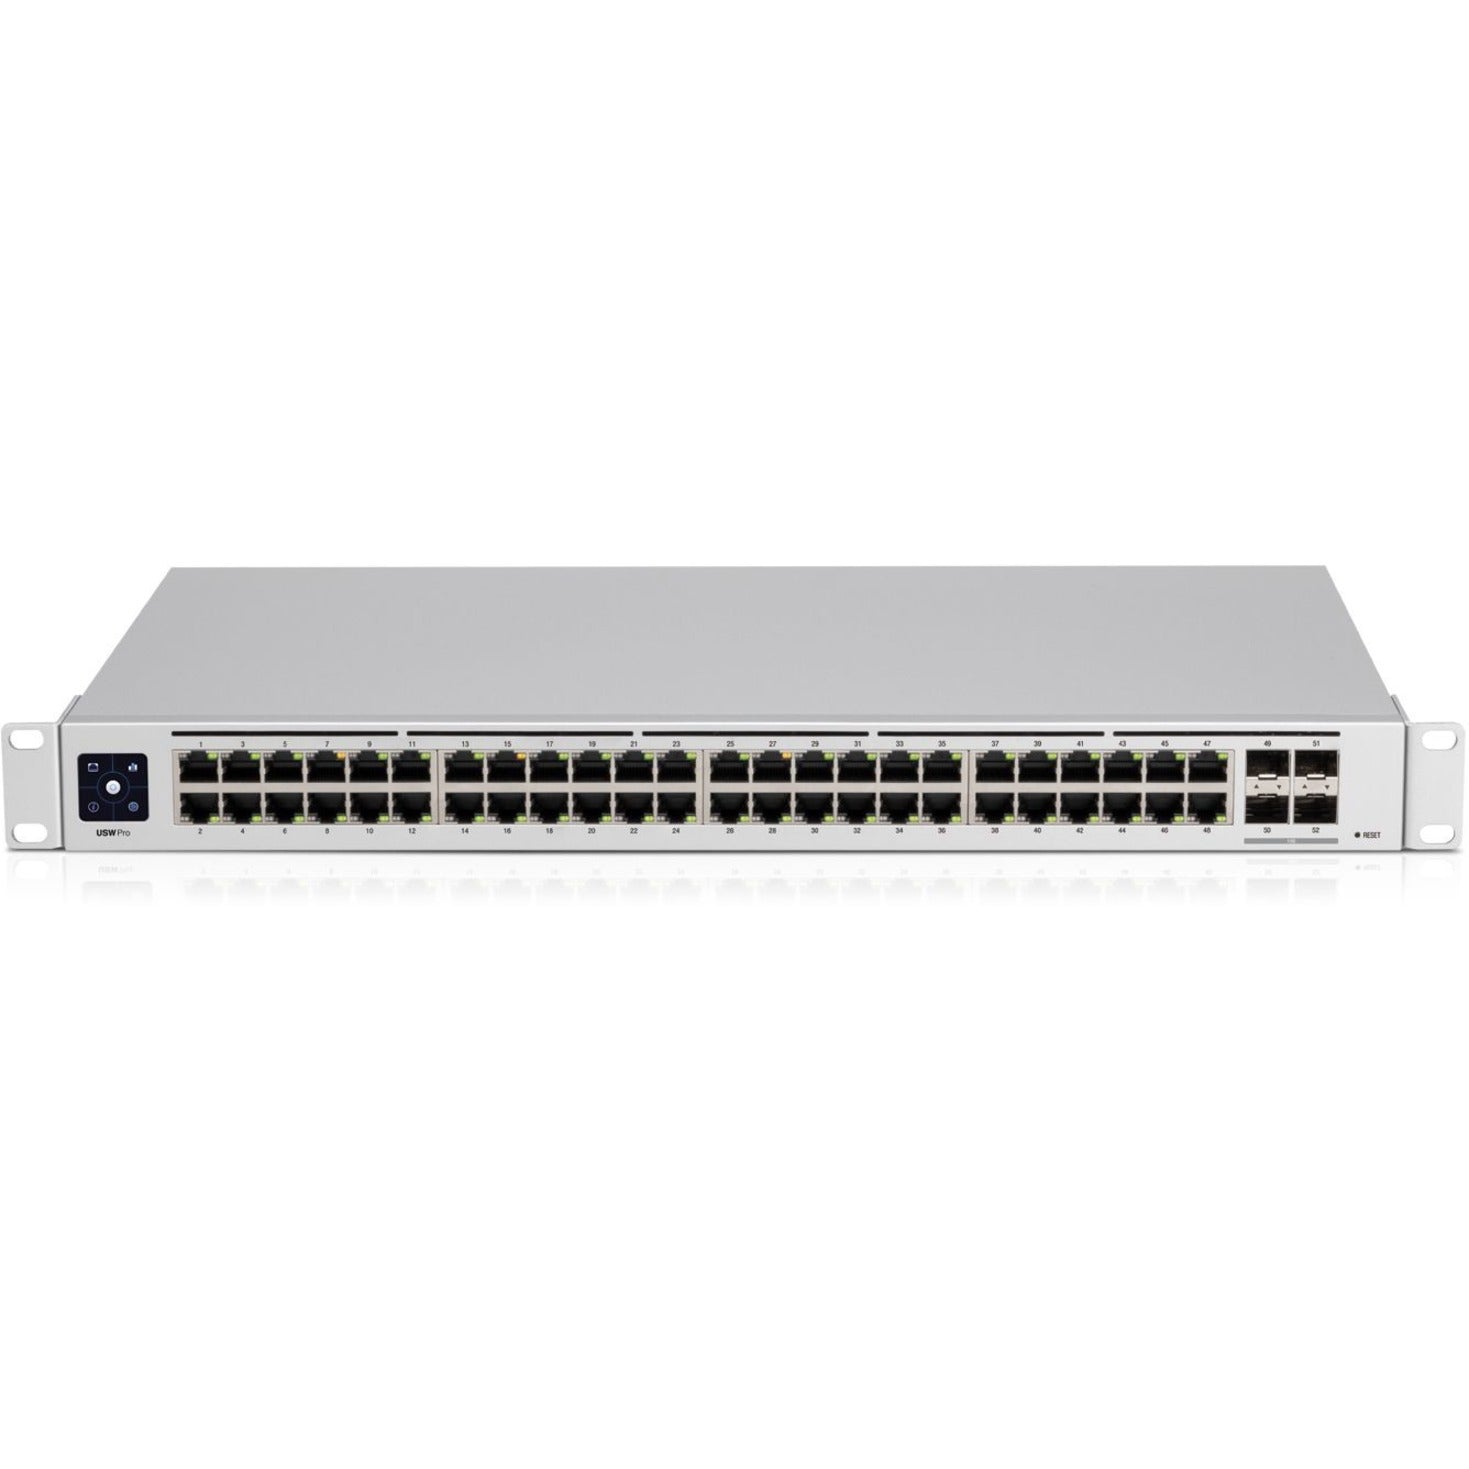 Ubiquiti USW-Pro-48 UniFi Pro 48-Port Switch, Gigabit Ethernet, 10 Gigabit Ethernet, 4 SFP+ Slots